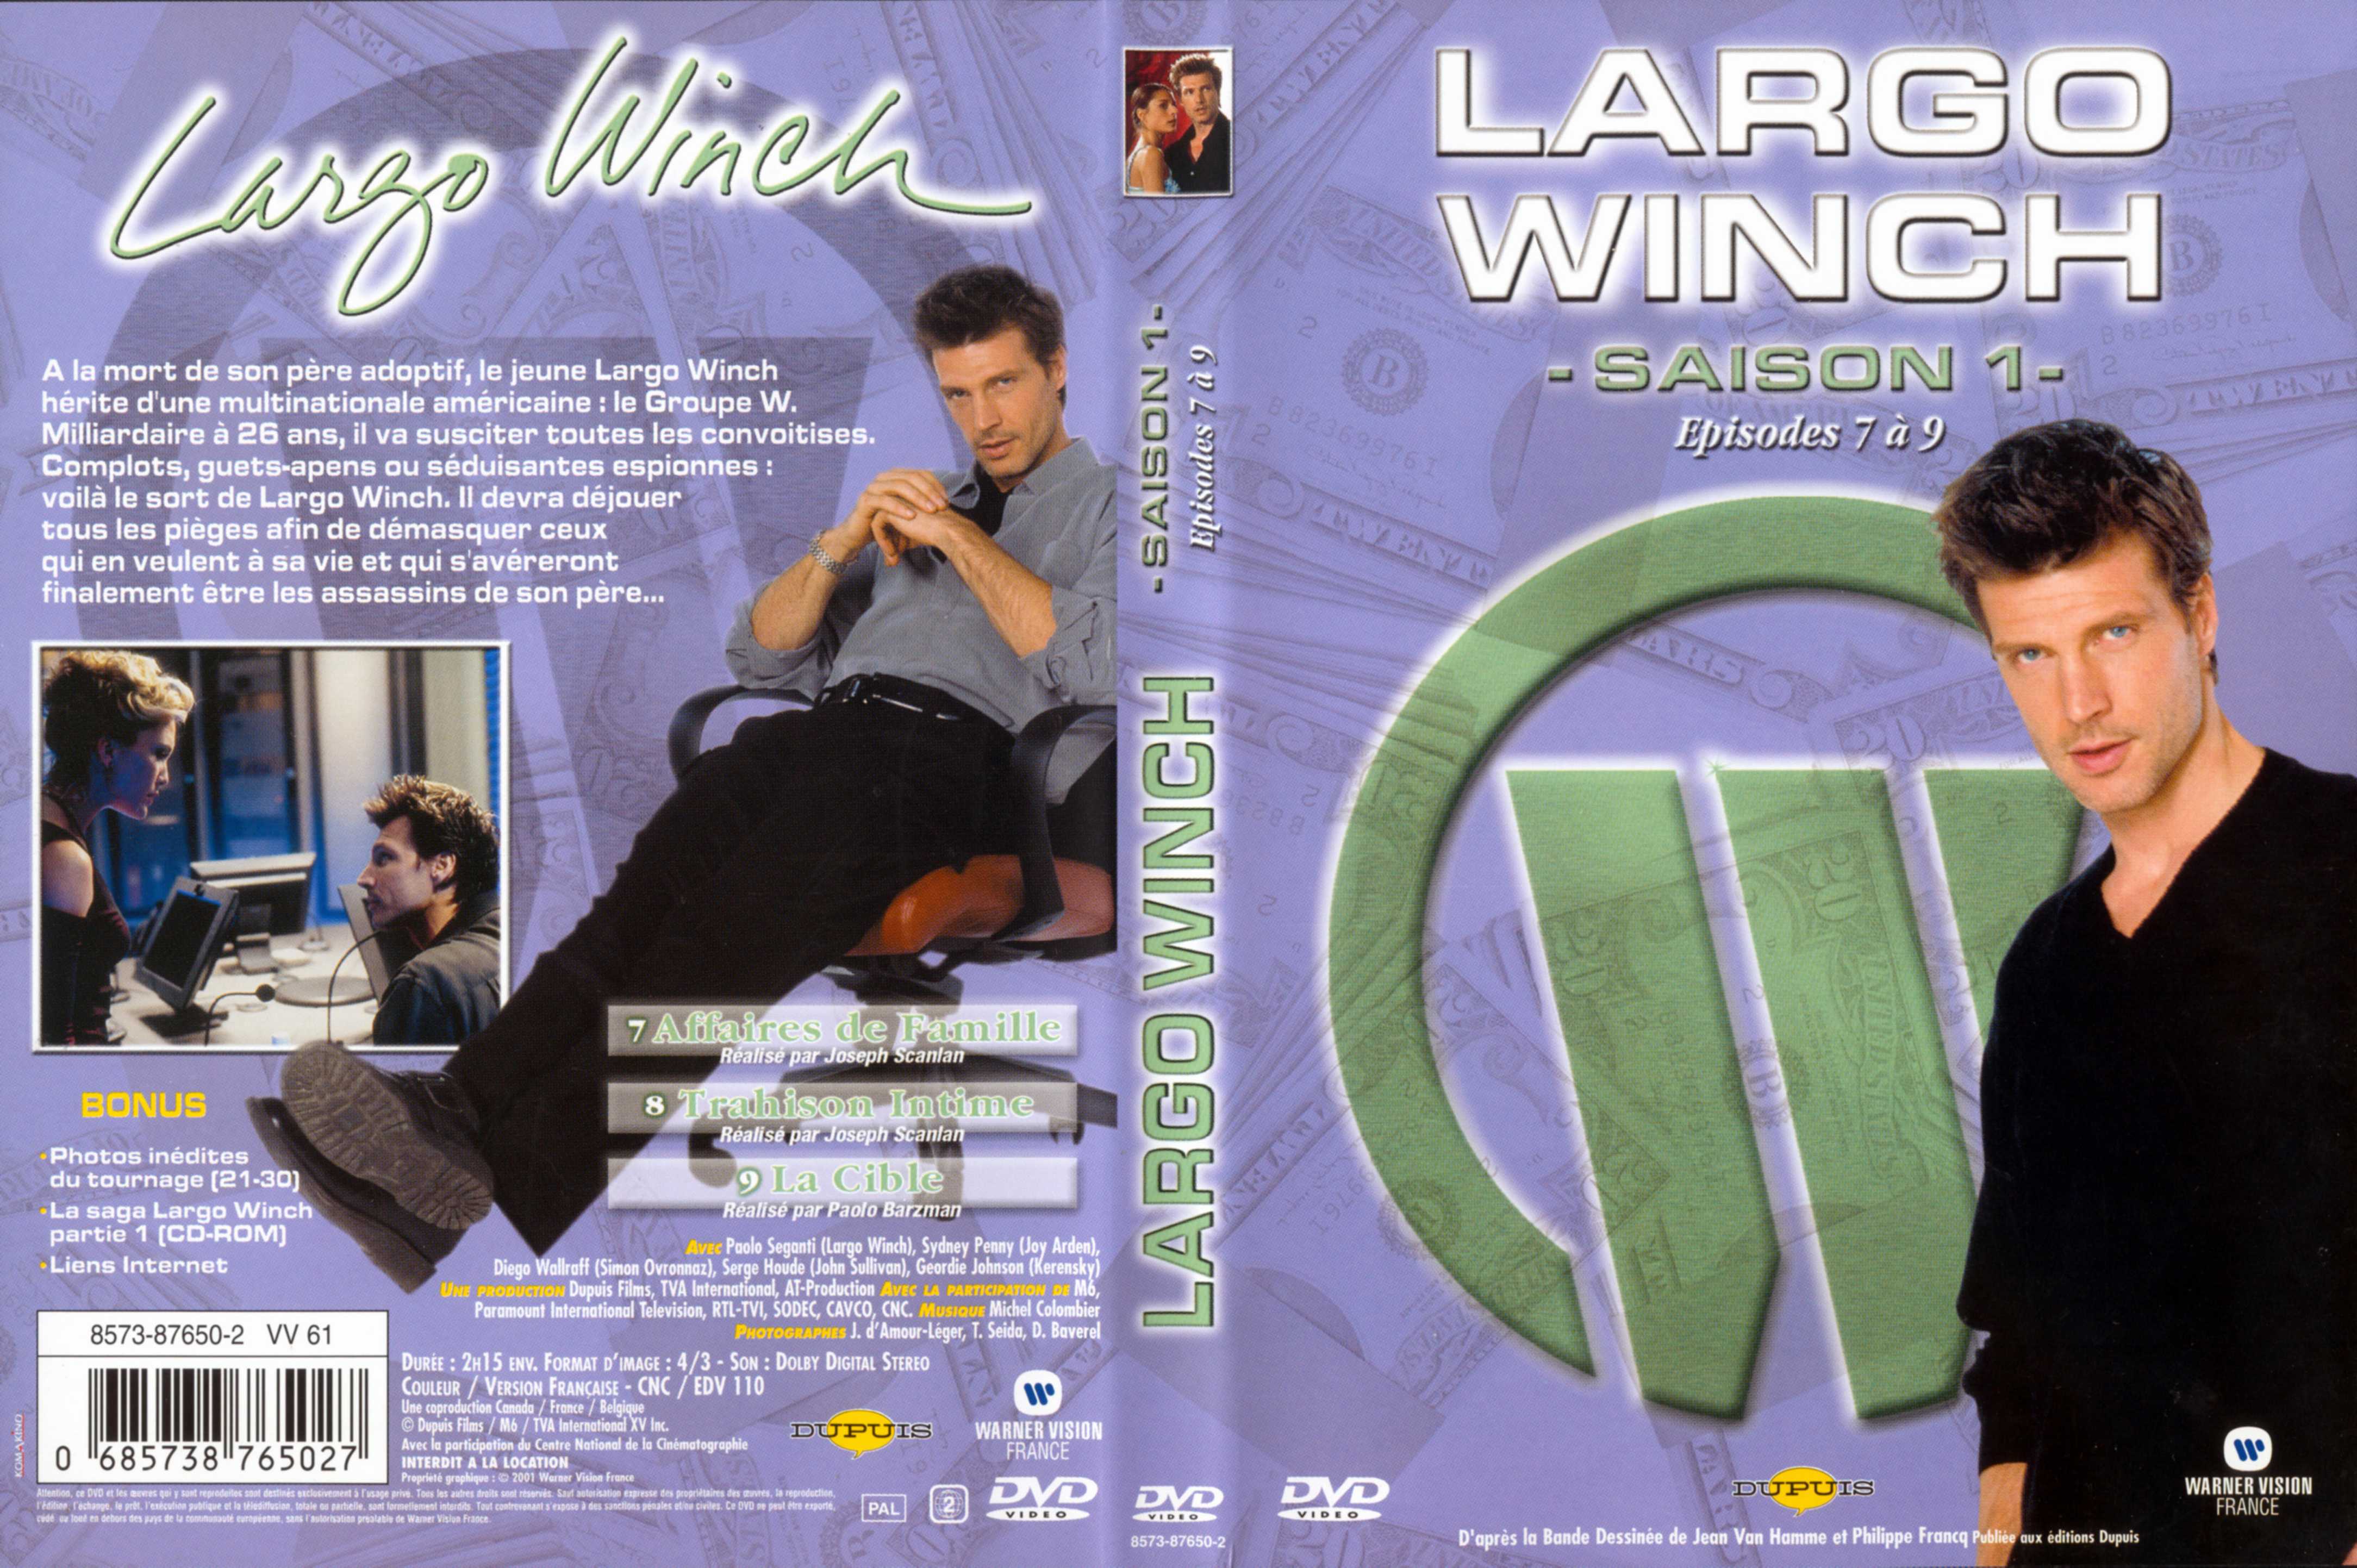 Jaquette DVD Largo Winch Saison 1 vol 03